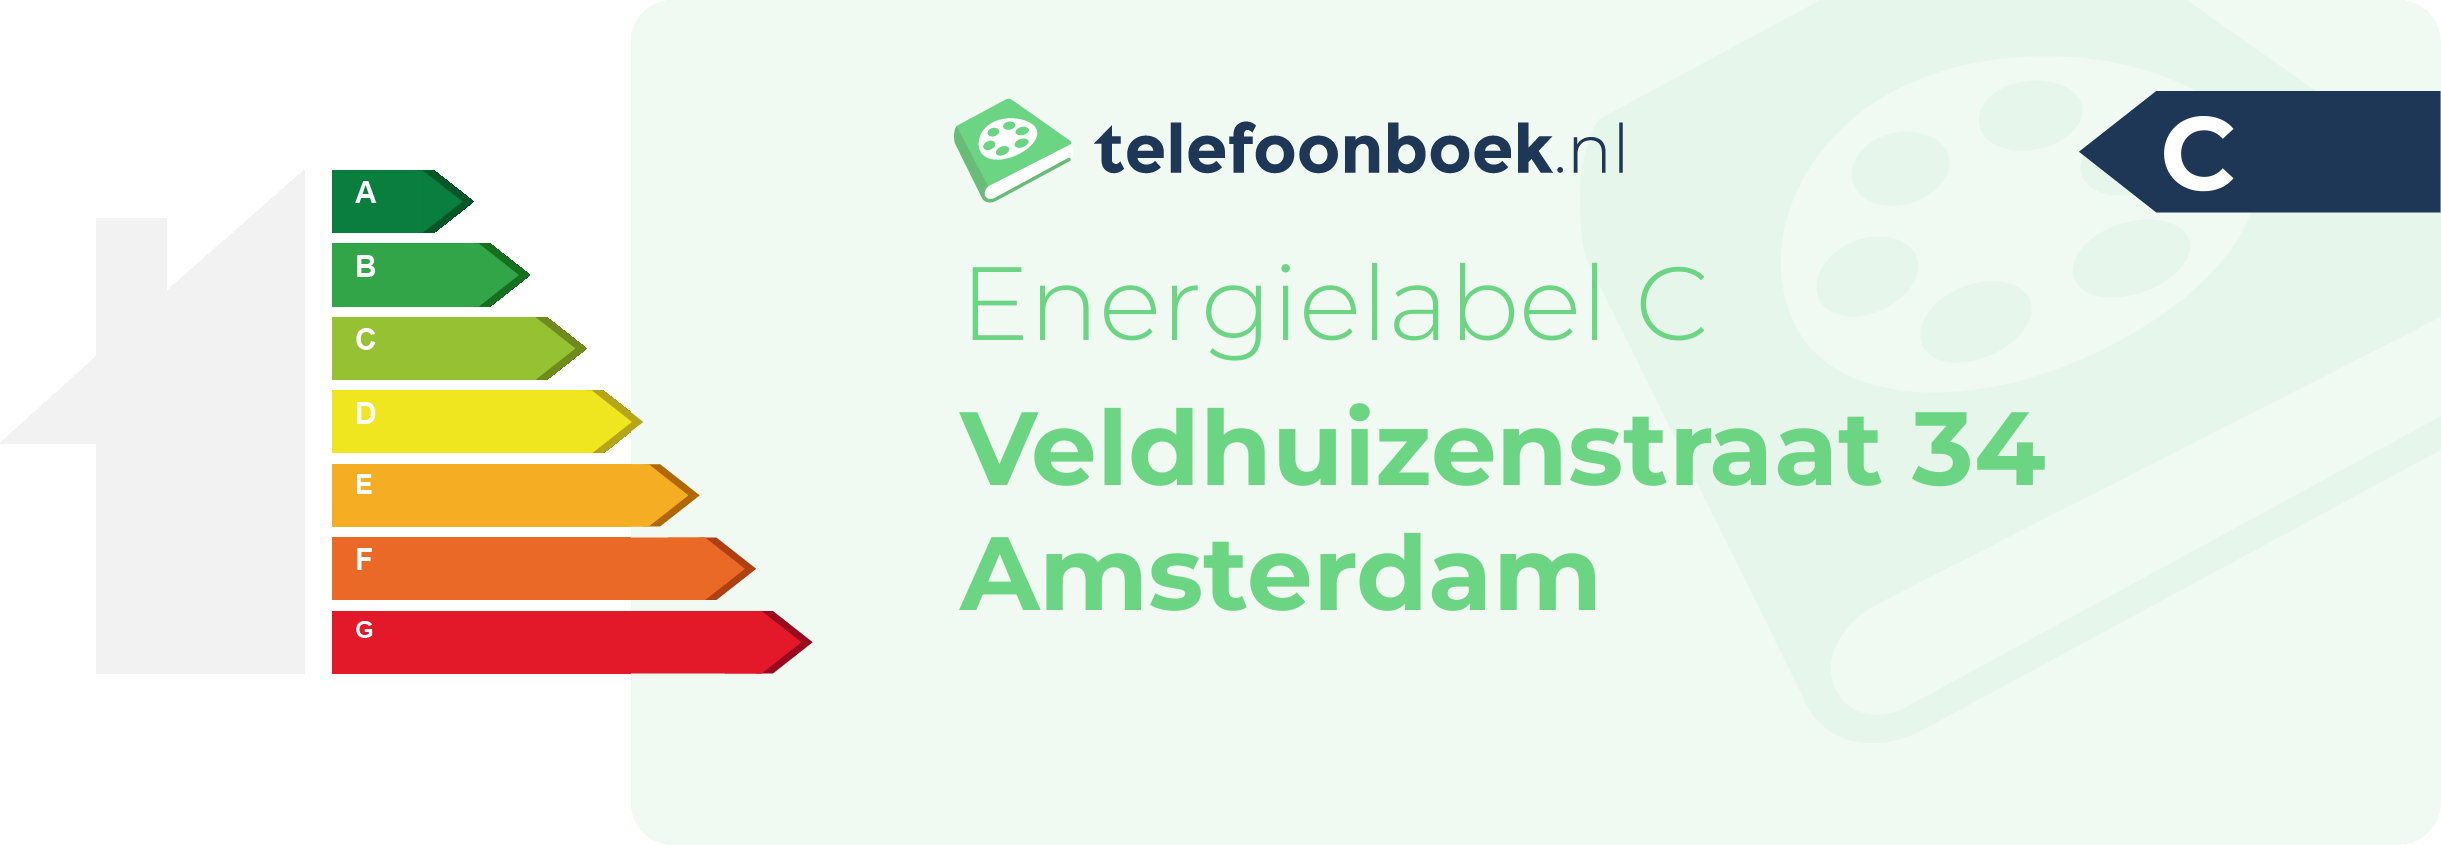 Energielabel Veldhuizenstraat 34 Amsterdam